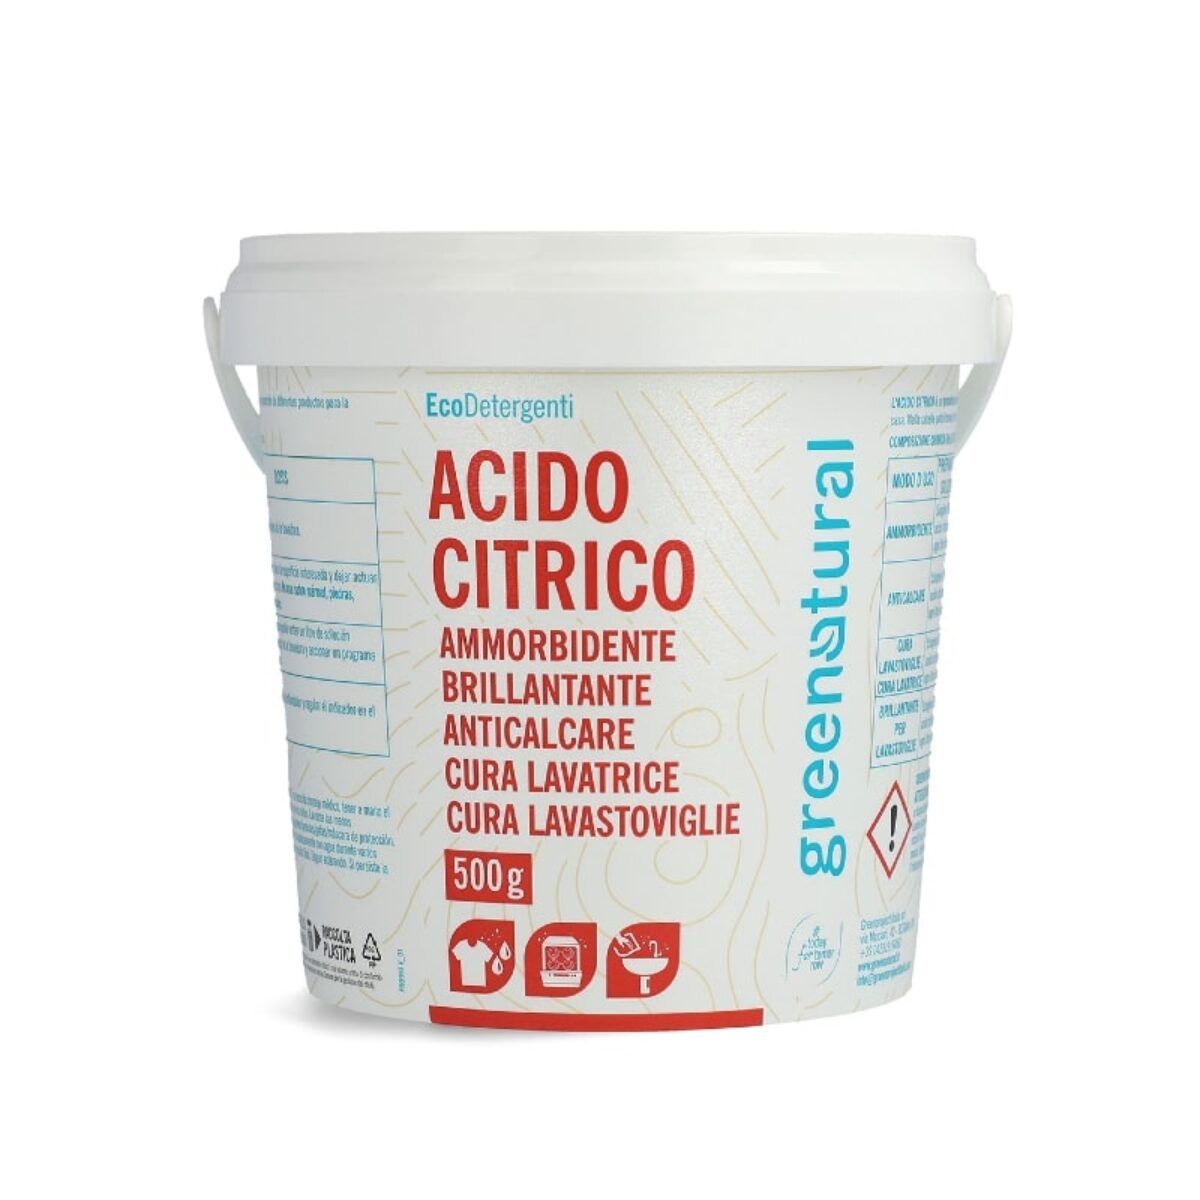 Acido Citrico secchiello 500gr - Greenatural - Cosmetici bio, naturale e  make up di qualità